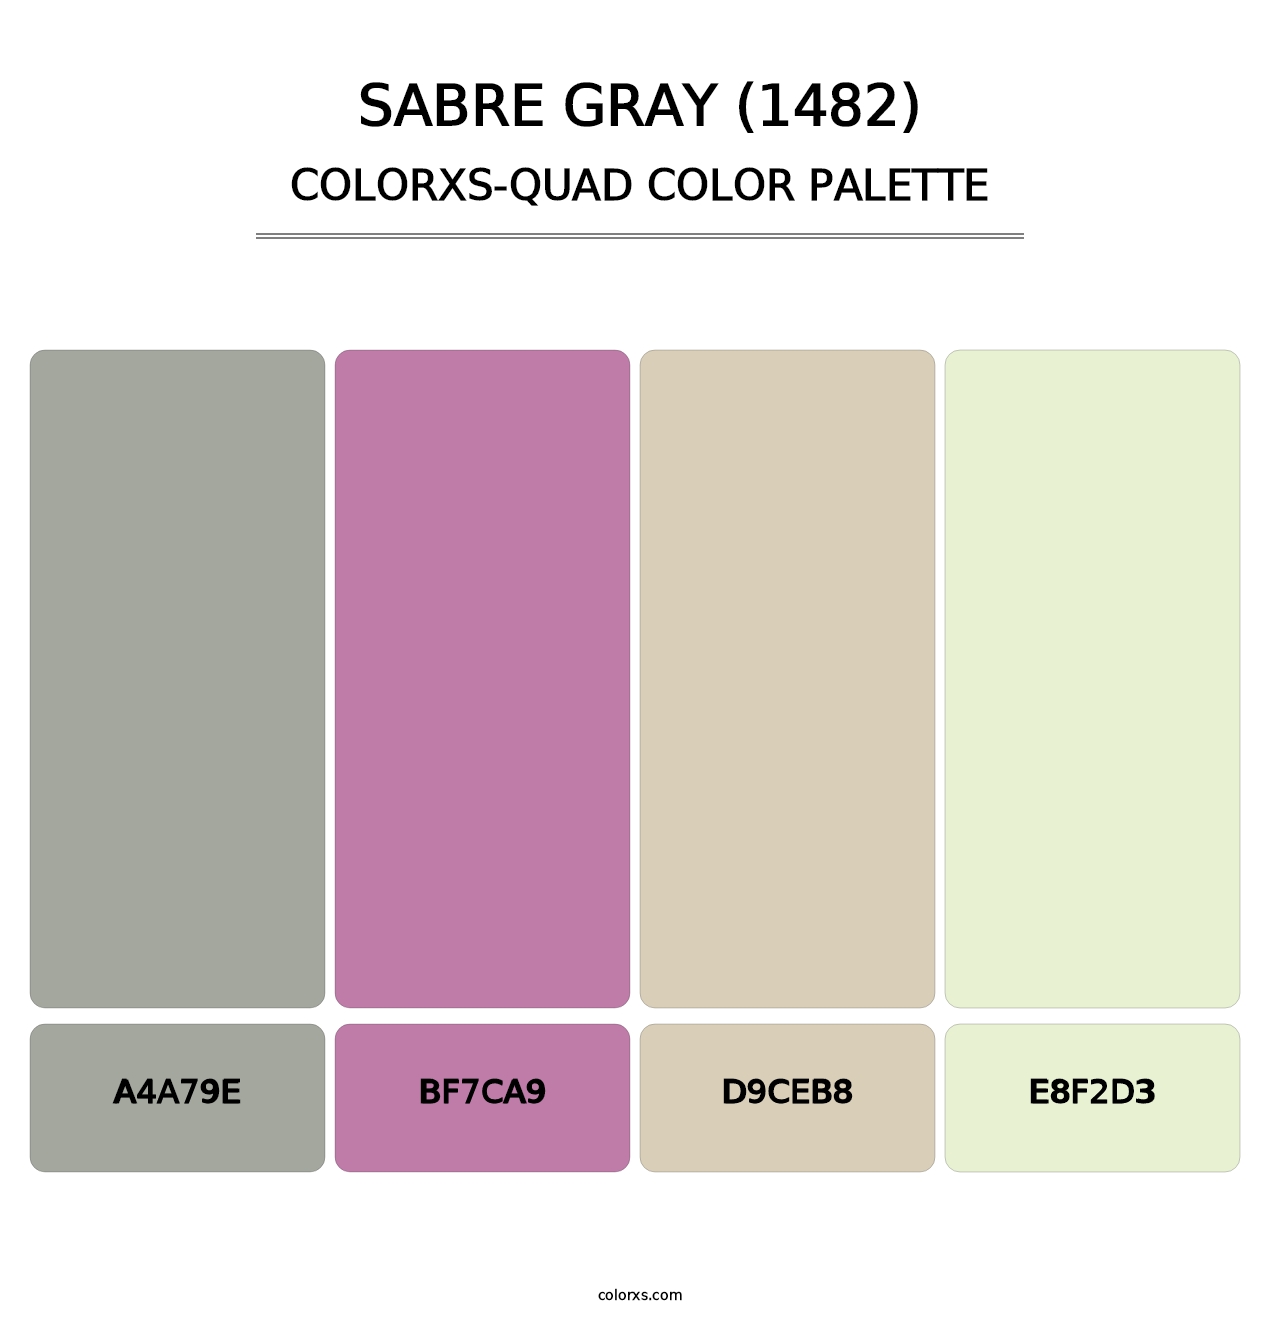 Sabre Gray (1482) - Colorxs Quad Palette